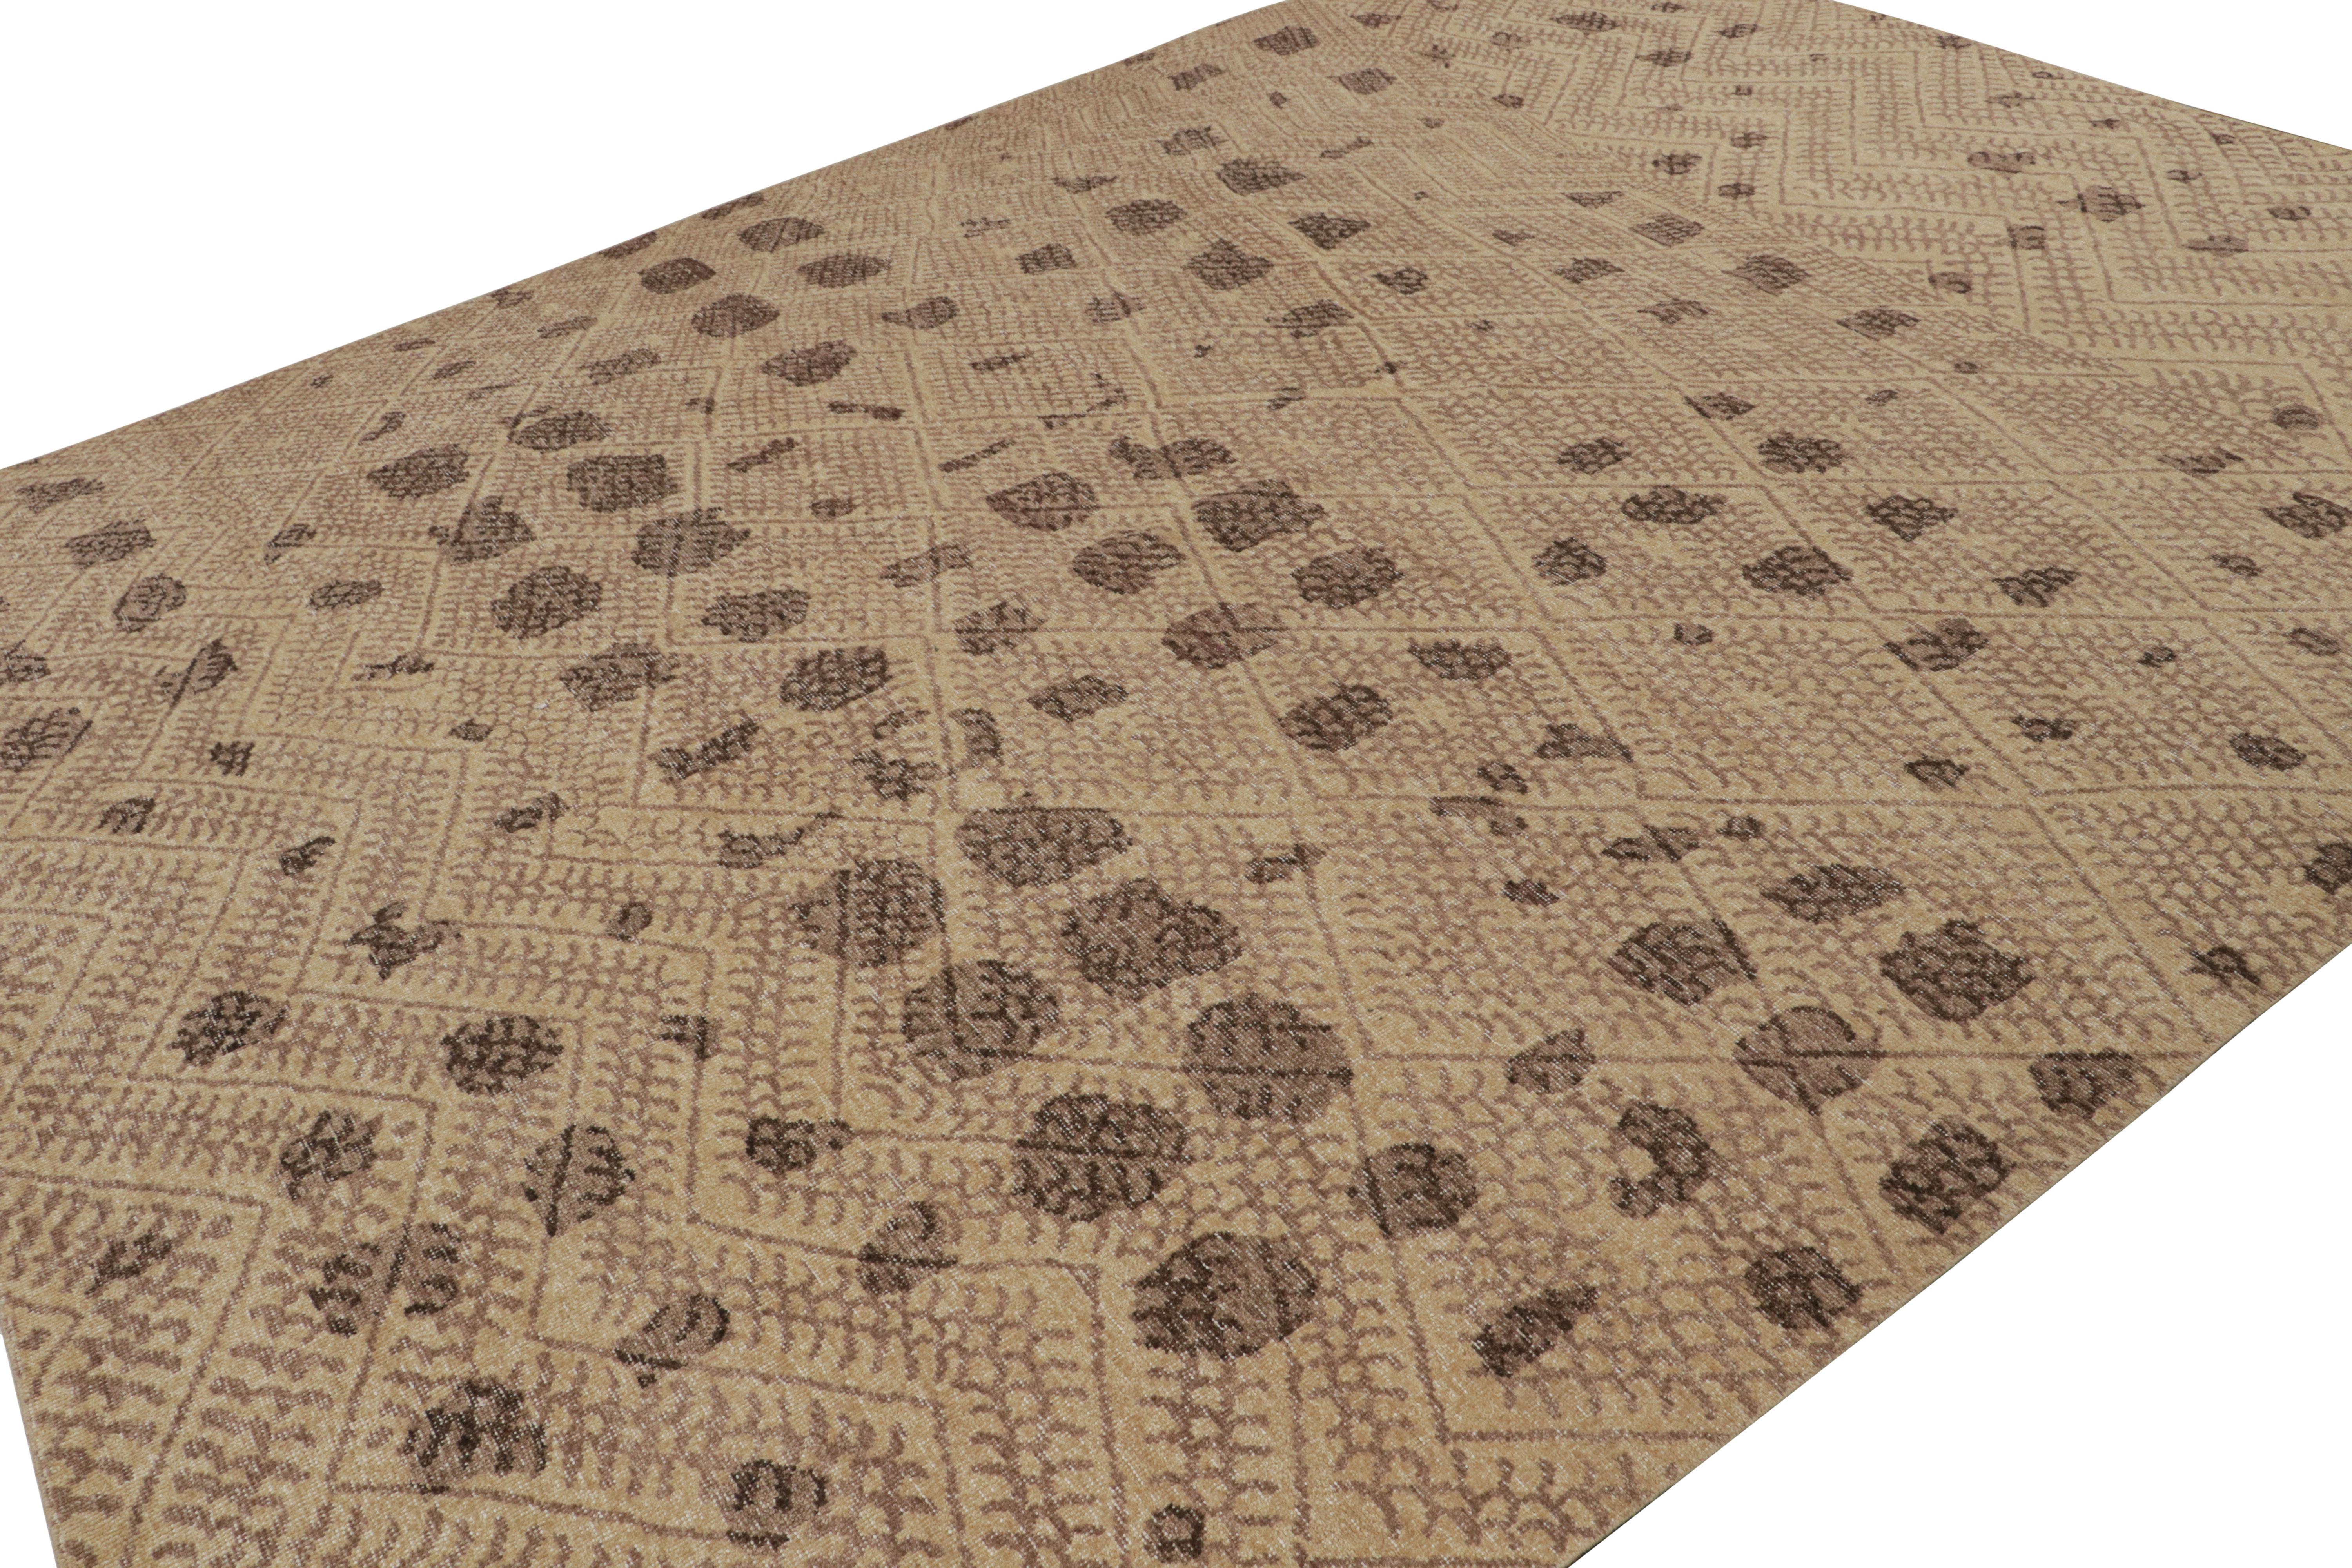 Dieser übergroße Teppich im Format 10x14 ist ein kühner Neuzugang in der Homage Collection'S von Rug & Kilim. Dieses aus Wolle handgeknüpfte Stück weist geometrische Muster auf, die vom primitiven Berberstil inspiriert sind. 

Über das Design: